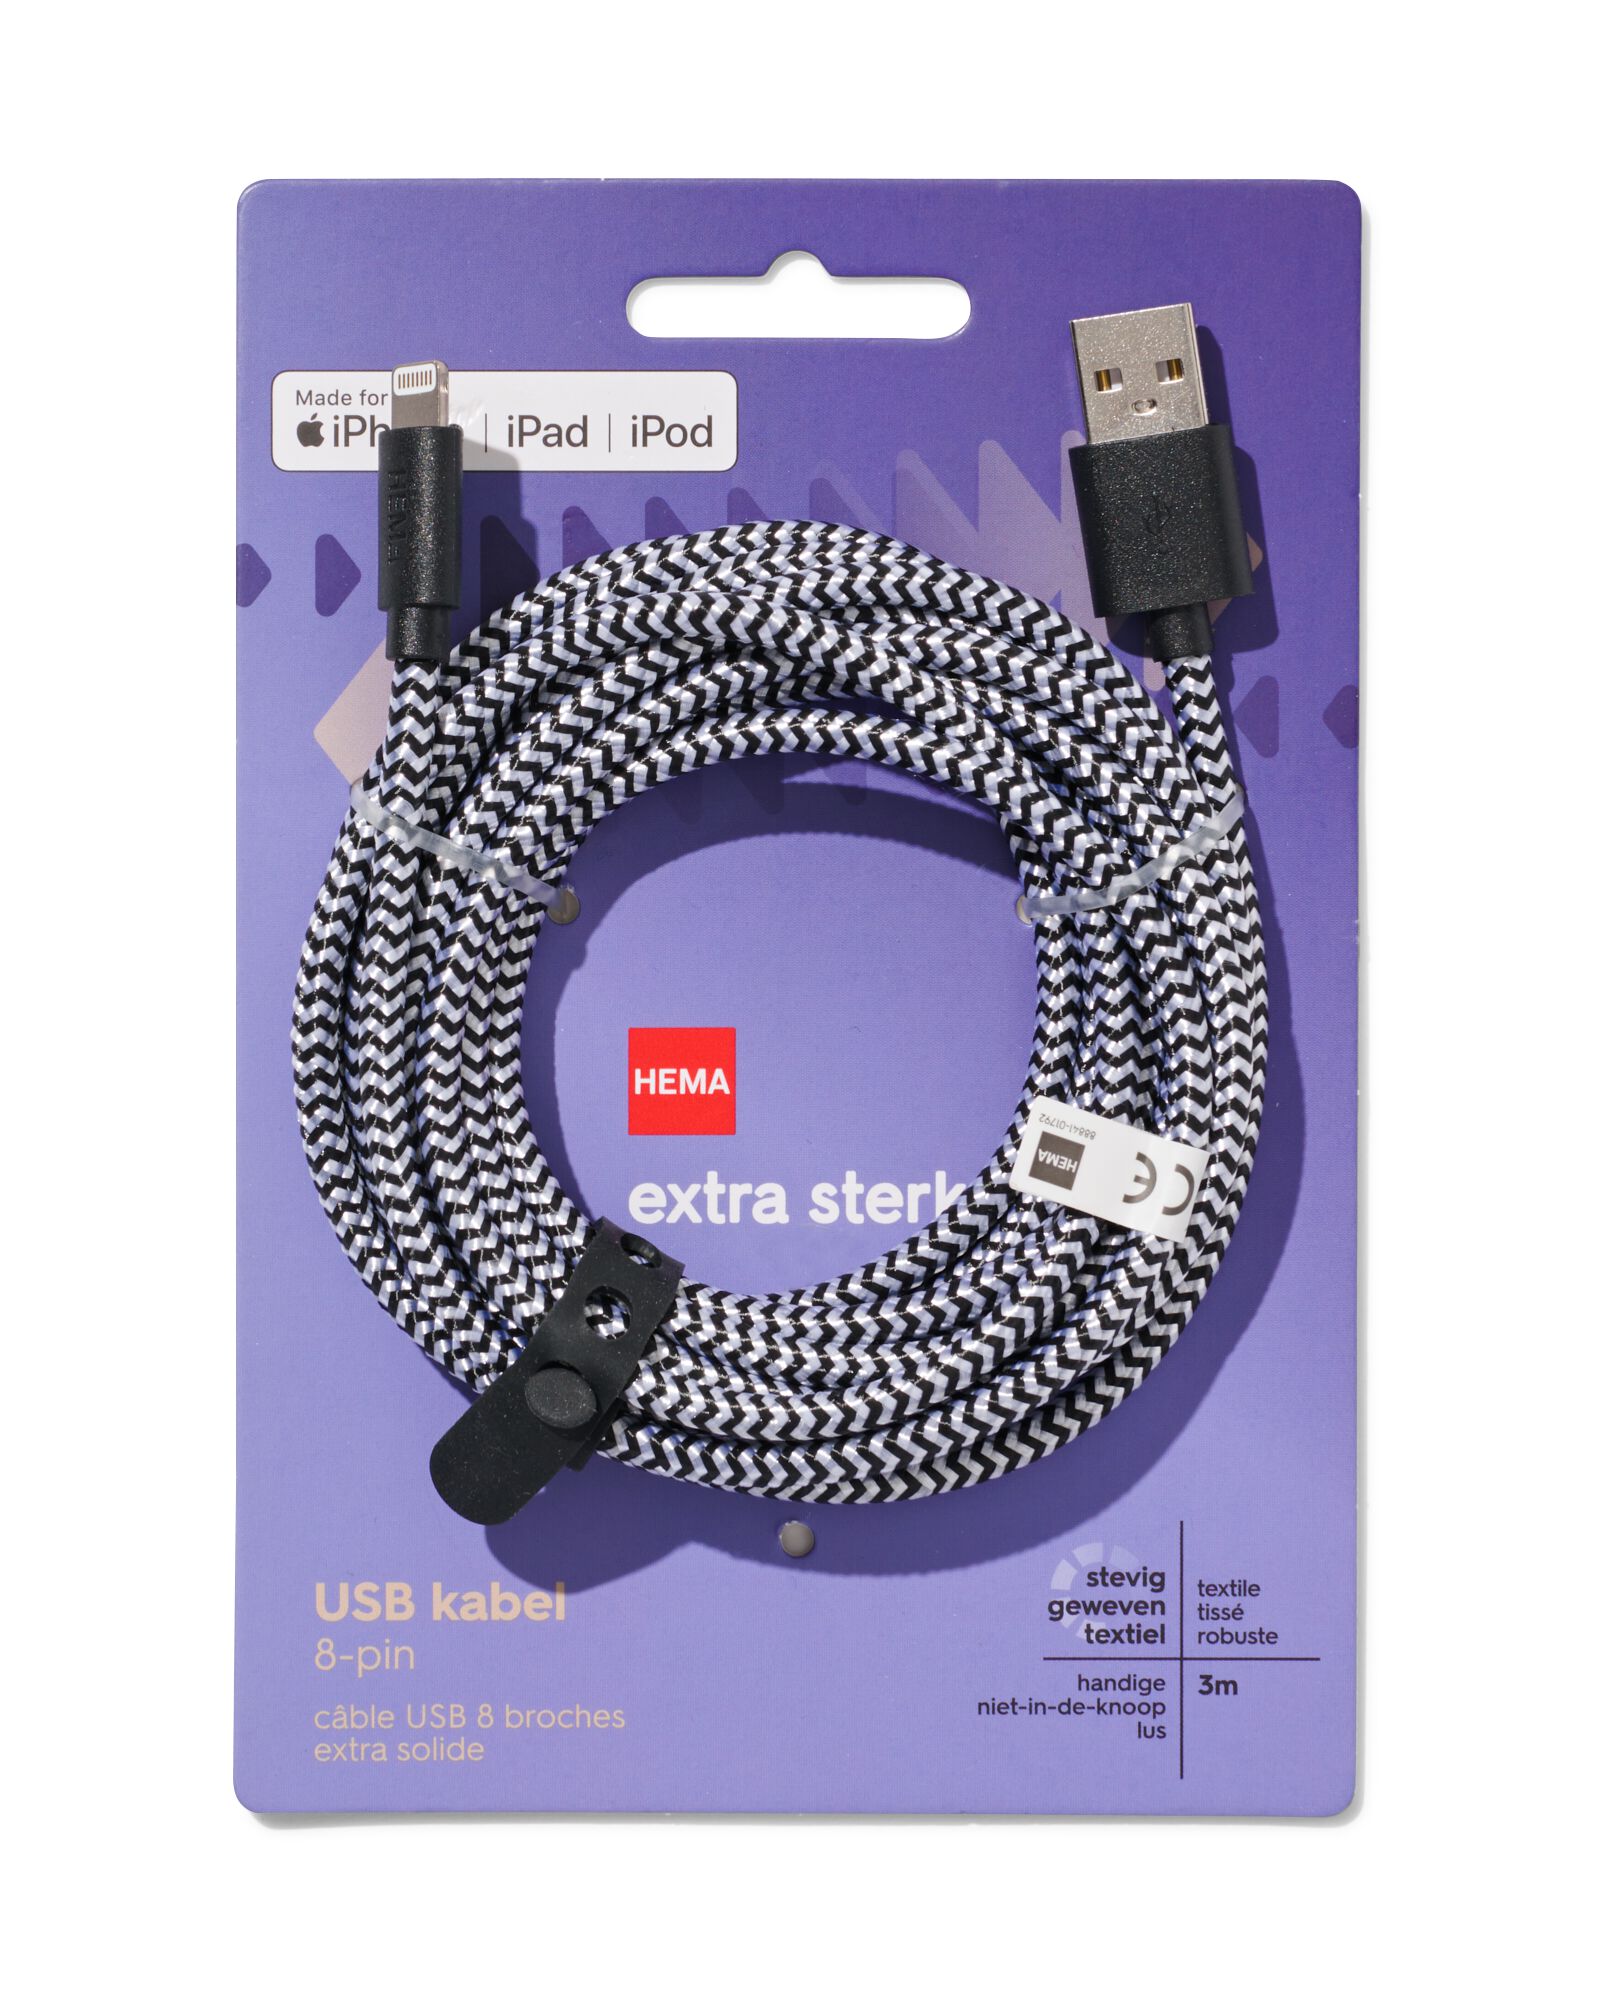 USB laadkabel 8-pin 3m - HEMA